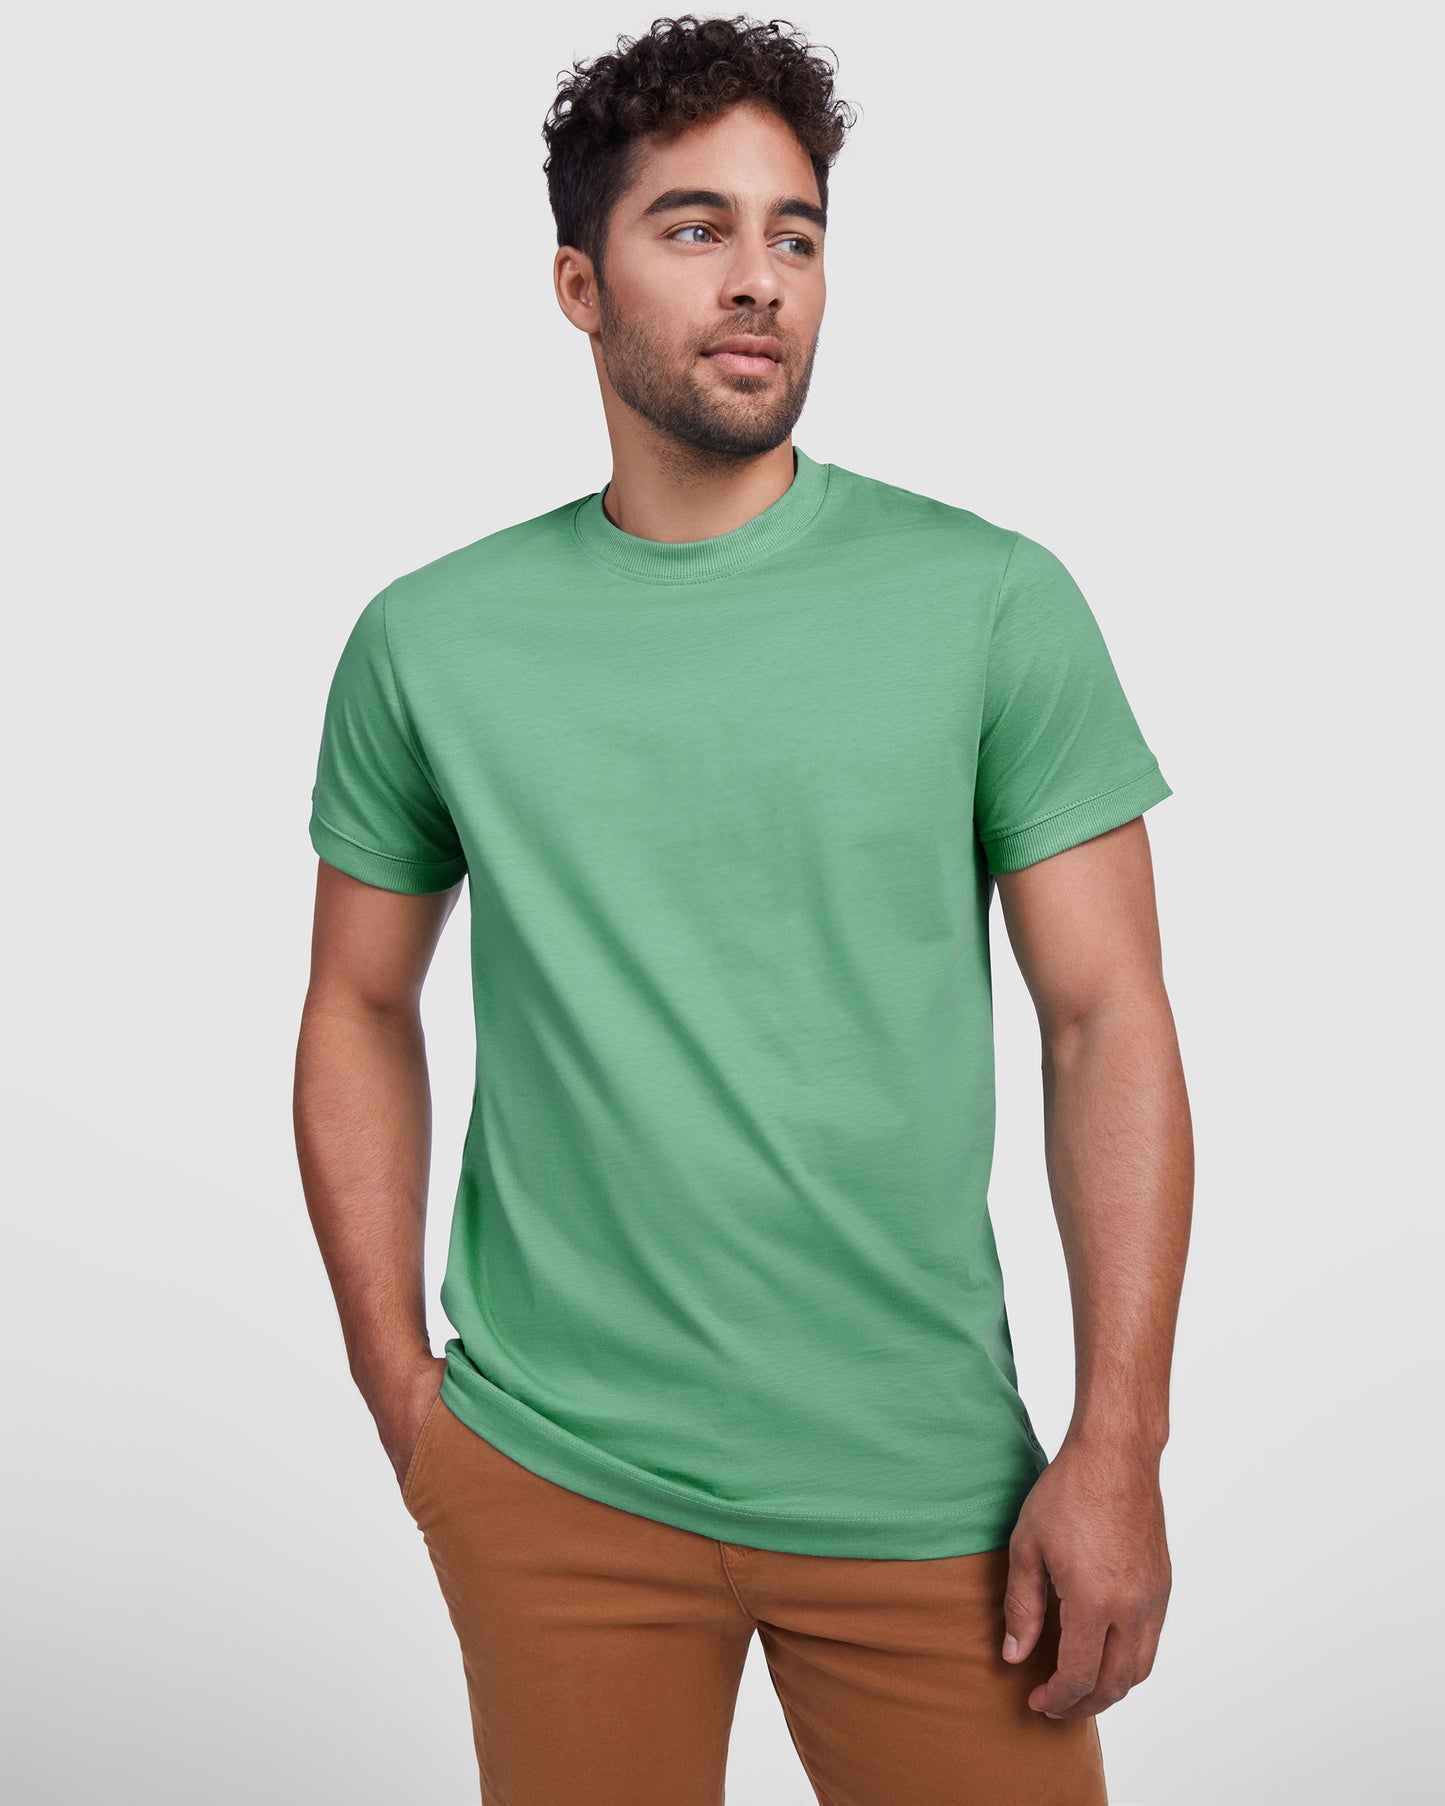 Vyriški marškinėliai VEZA, žali